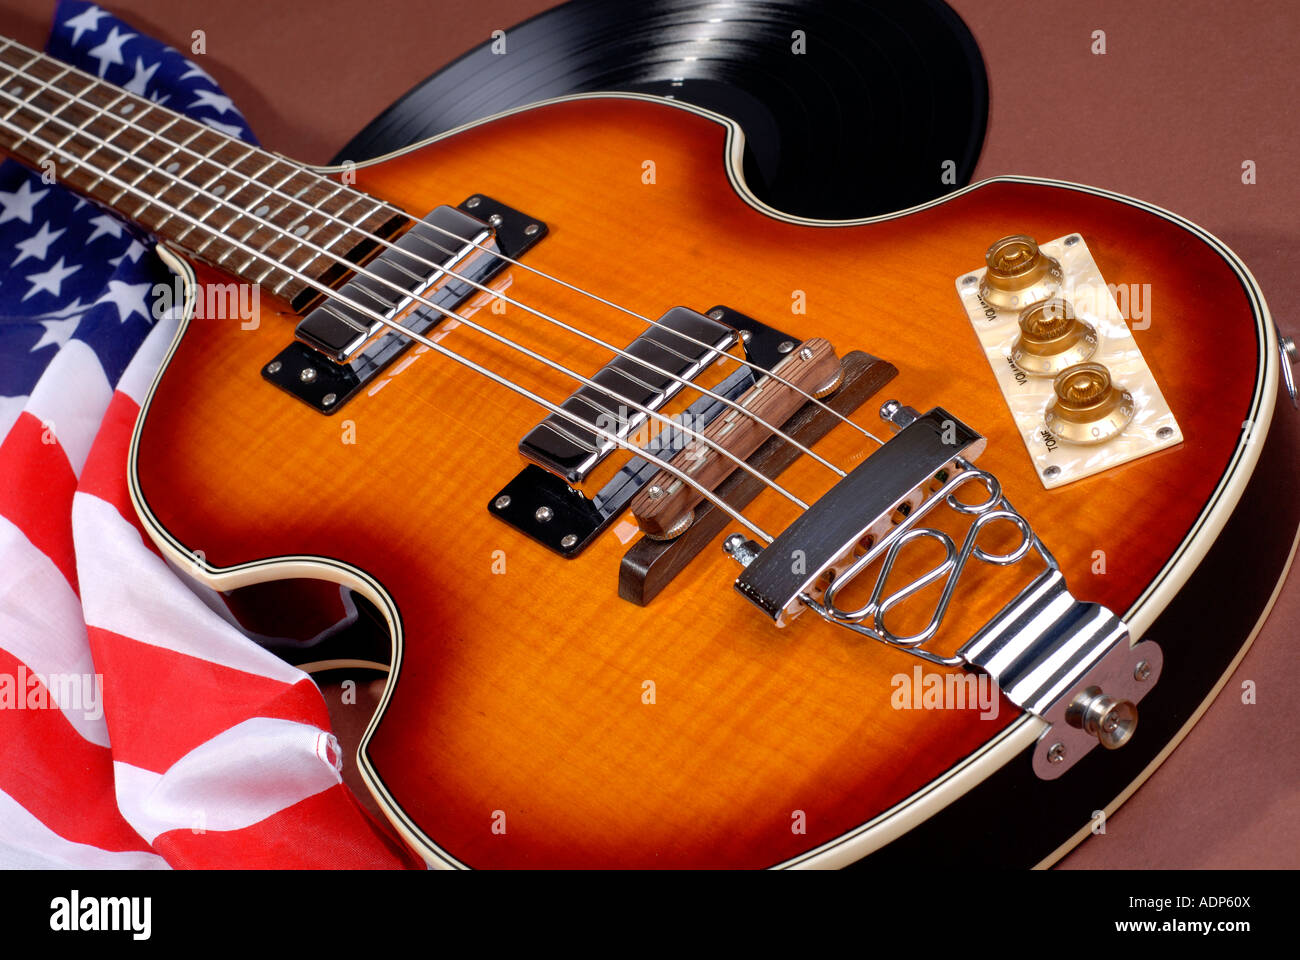 Reproduction de la Takamine Guitare Basse 500 rendu célèbre par Paul  McCartney avec un drapeau américain Stars and Stripes et enregistrement LP  Photo Stock - Alamy